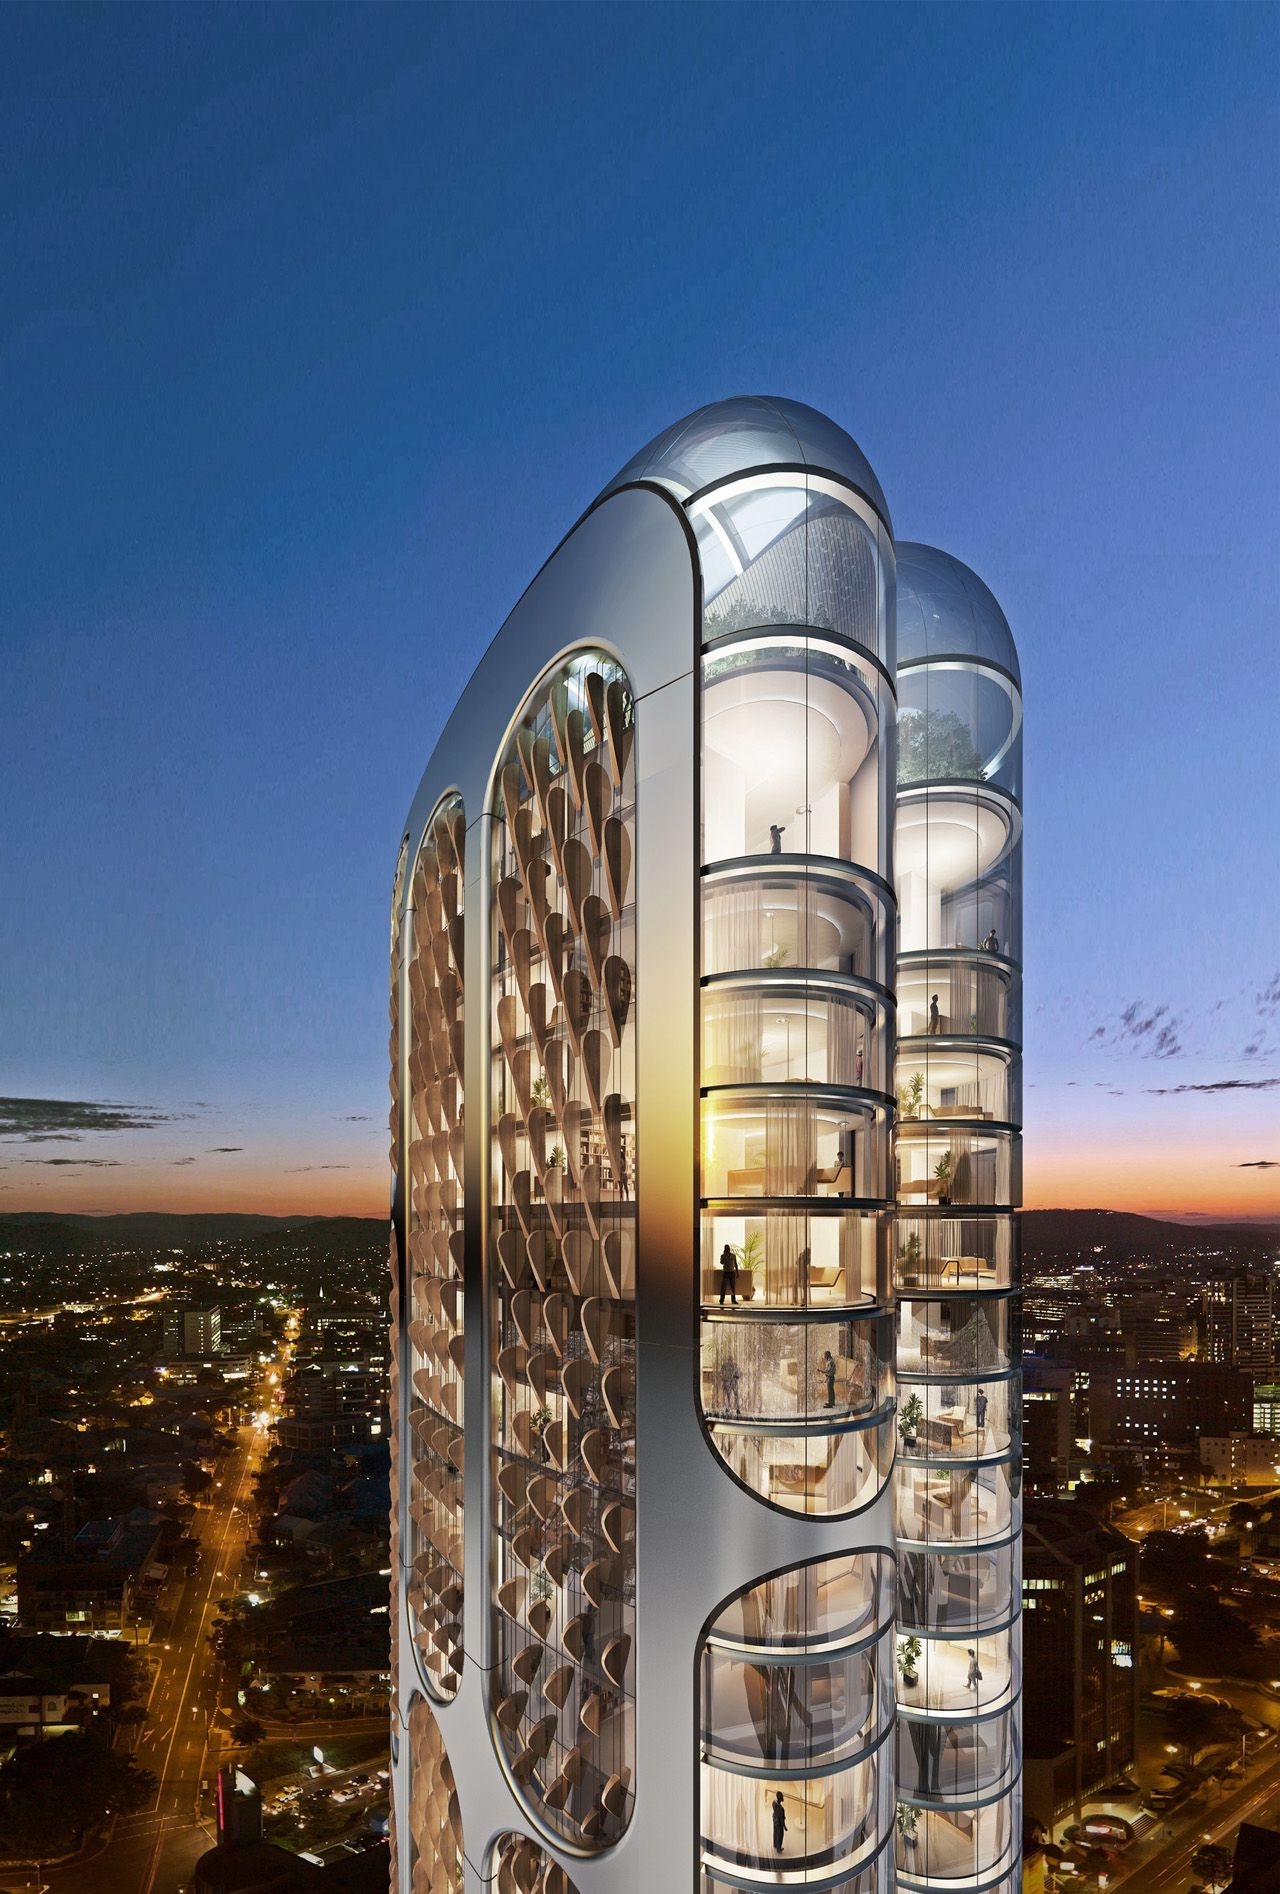 Futuristic 197 Building In The Heart Of Parramatta